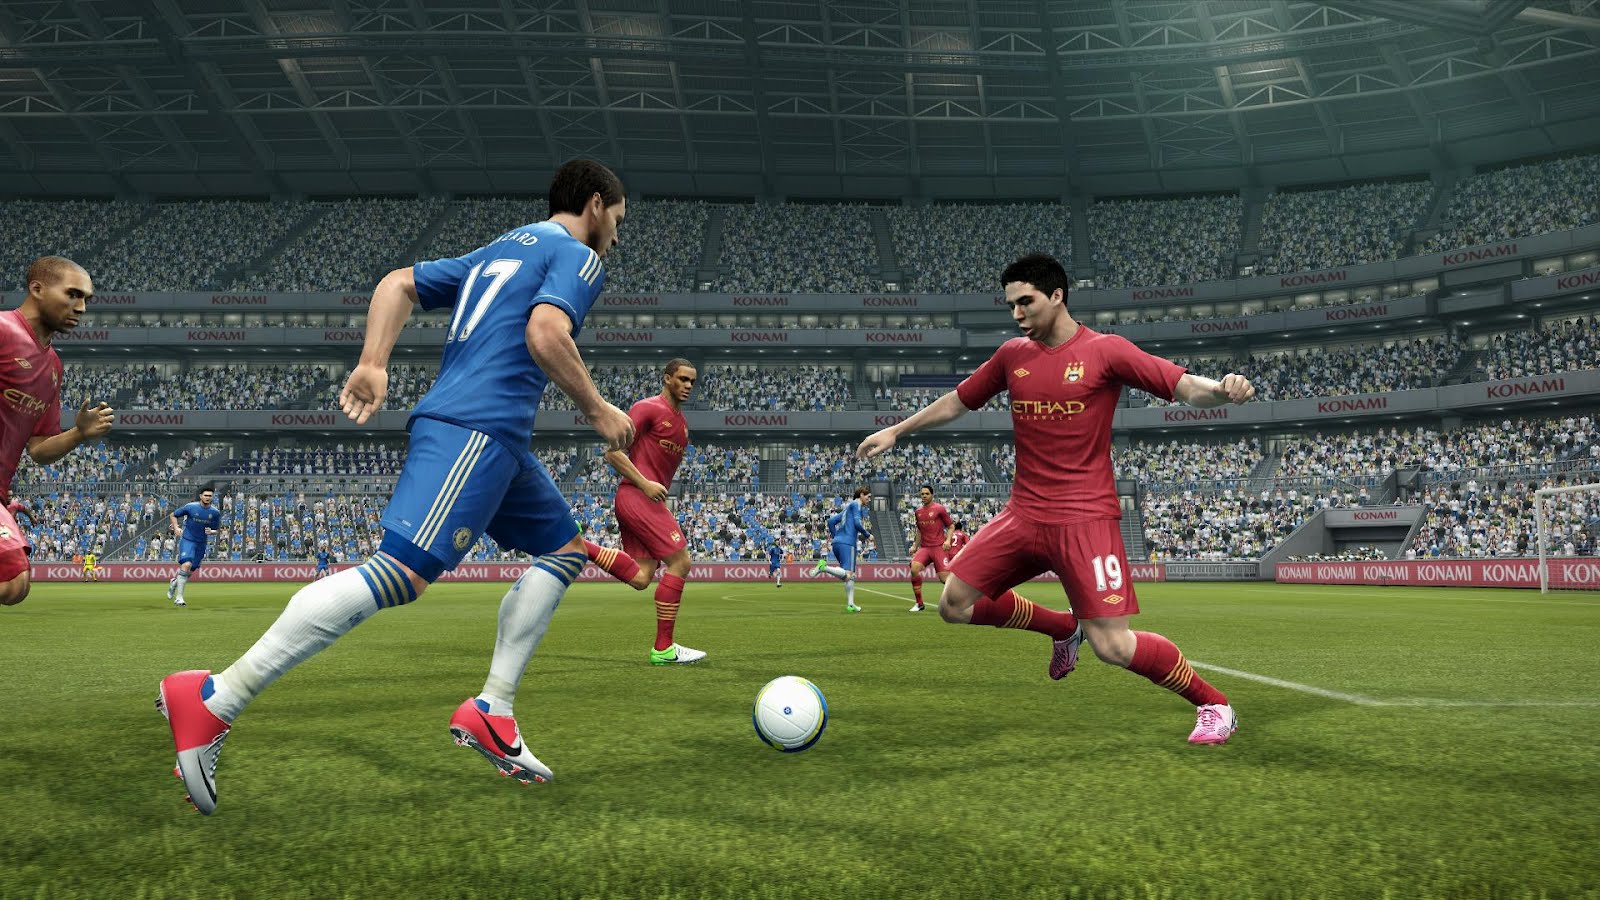 PES Pro Evolution Soccer 2013 free Download